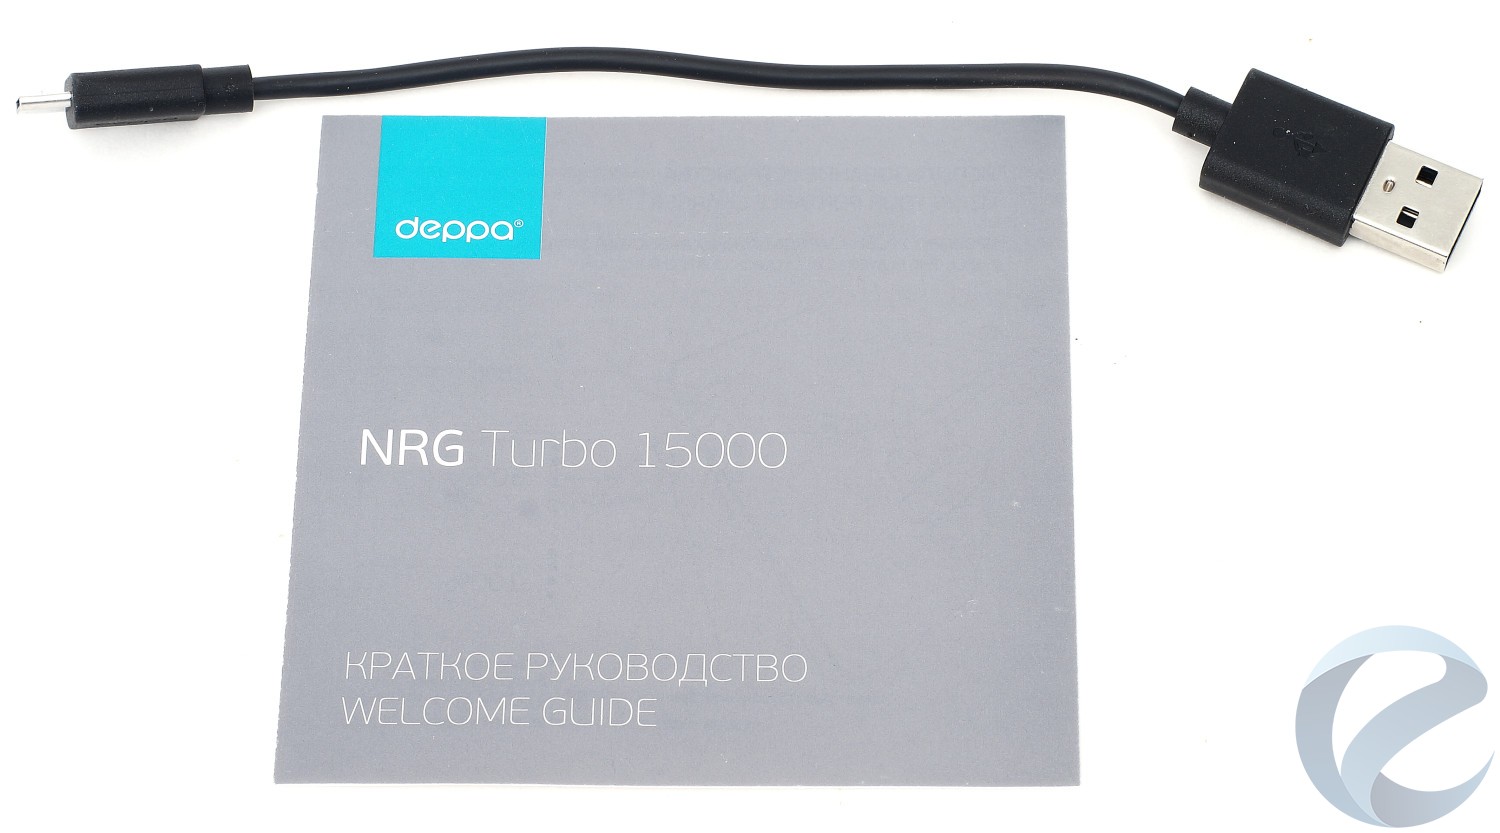 Упаковка и комплектация внешнего аккумулятора Deppa NRG Turbo 15000